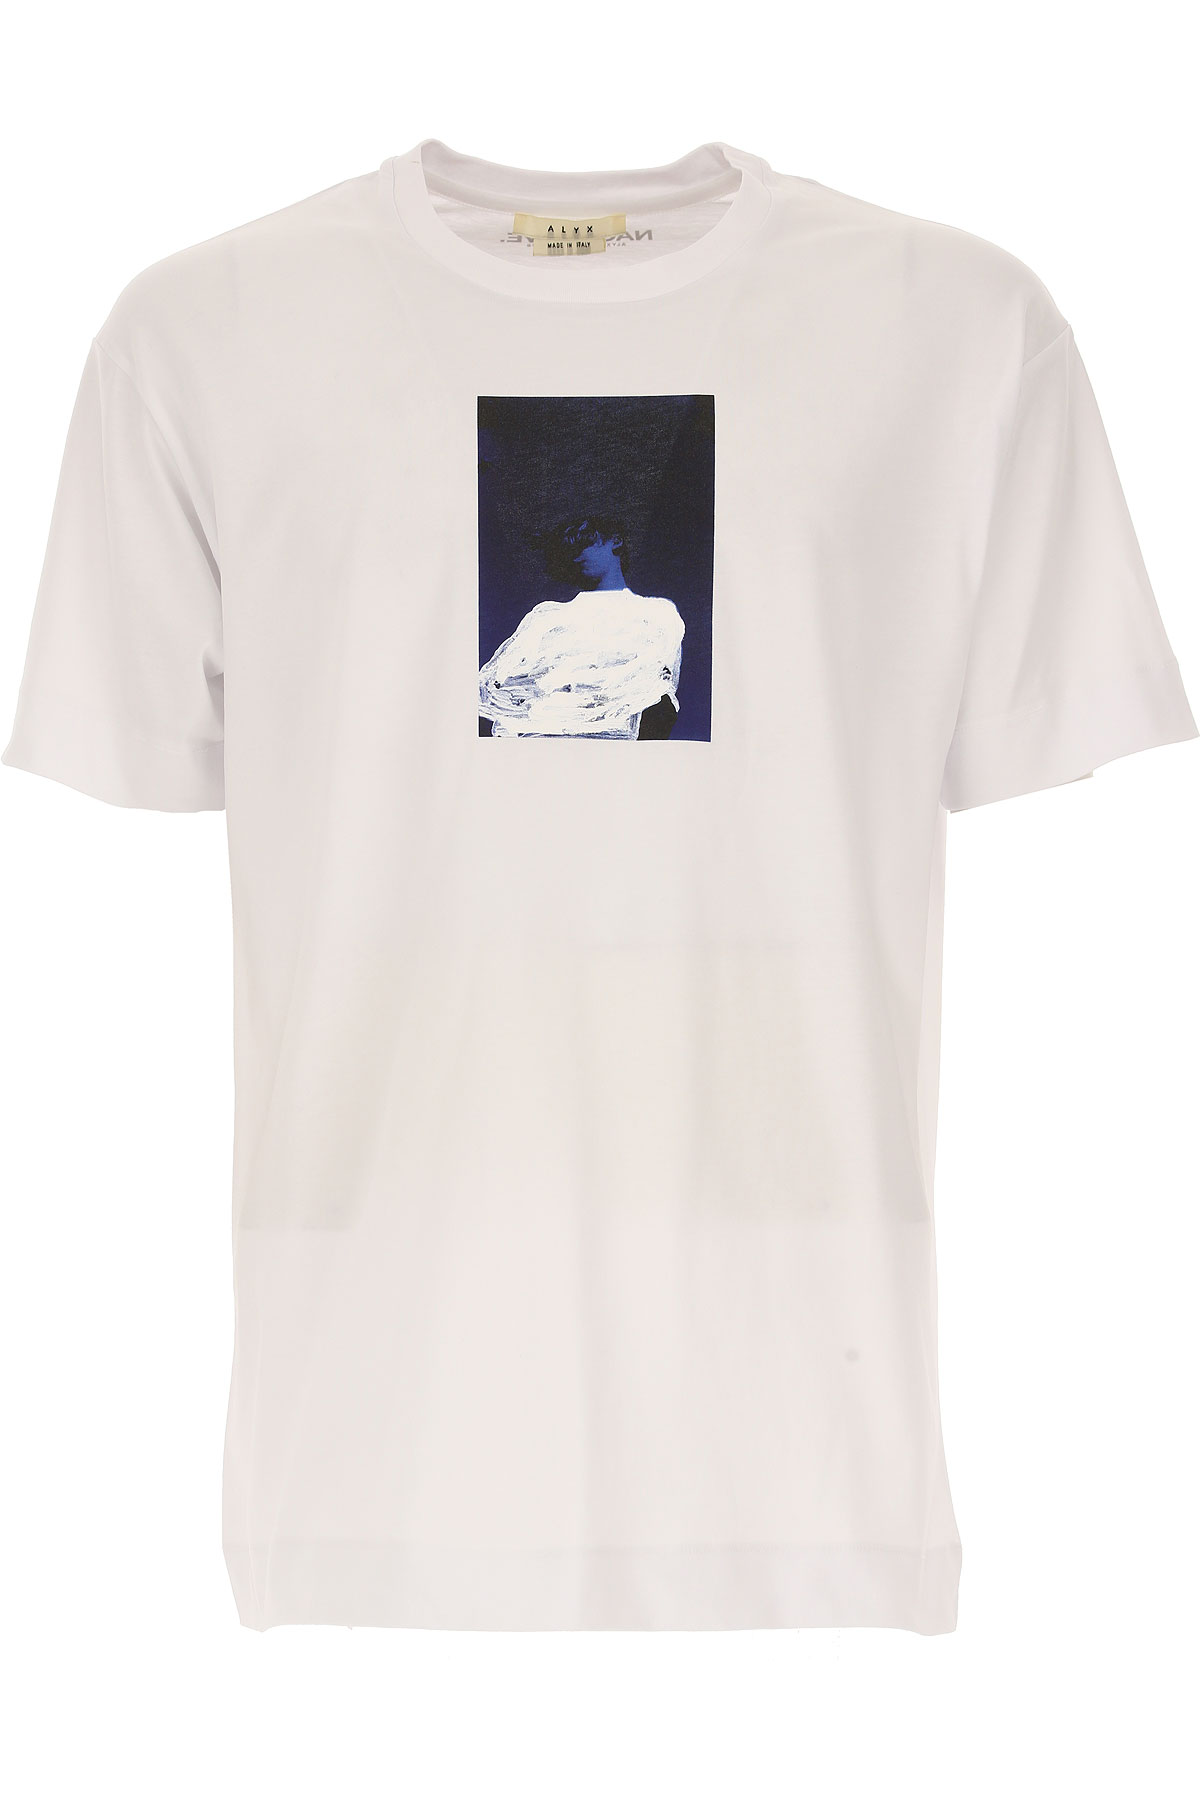 ALYX T-shirt Homme, Blanc, Coton, 2017, L M